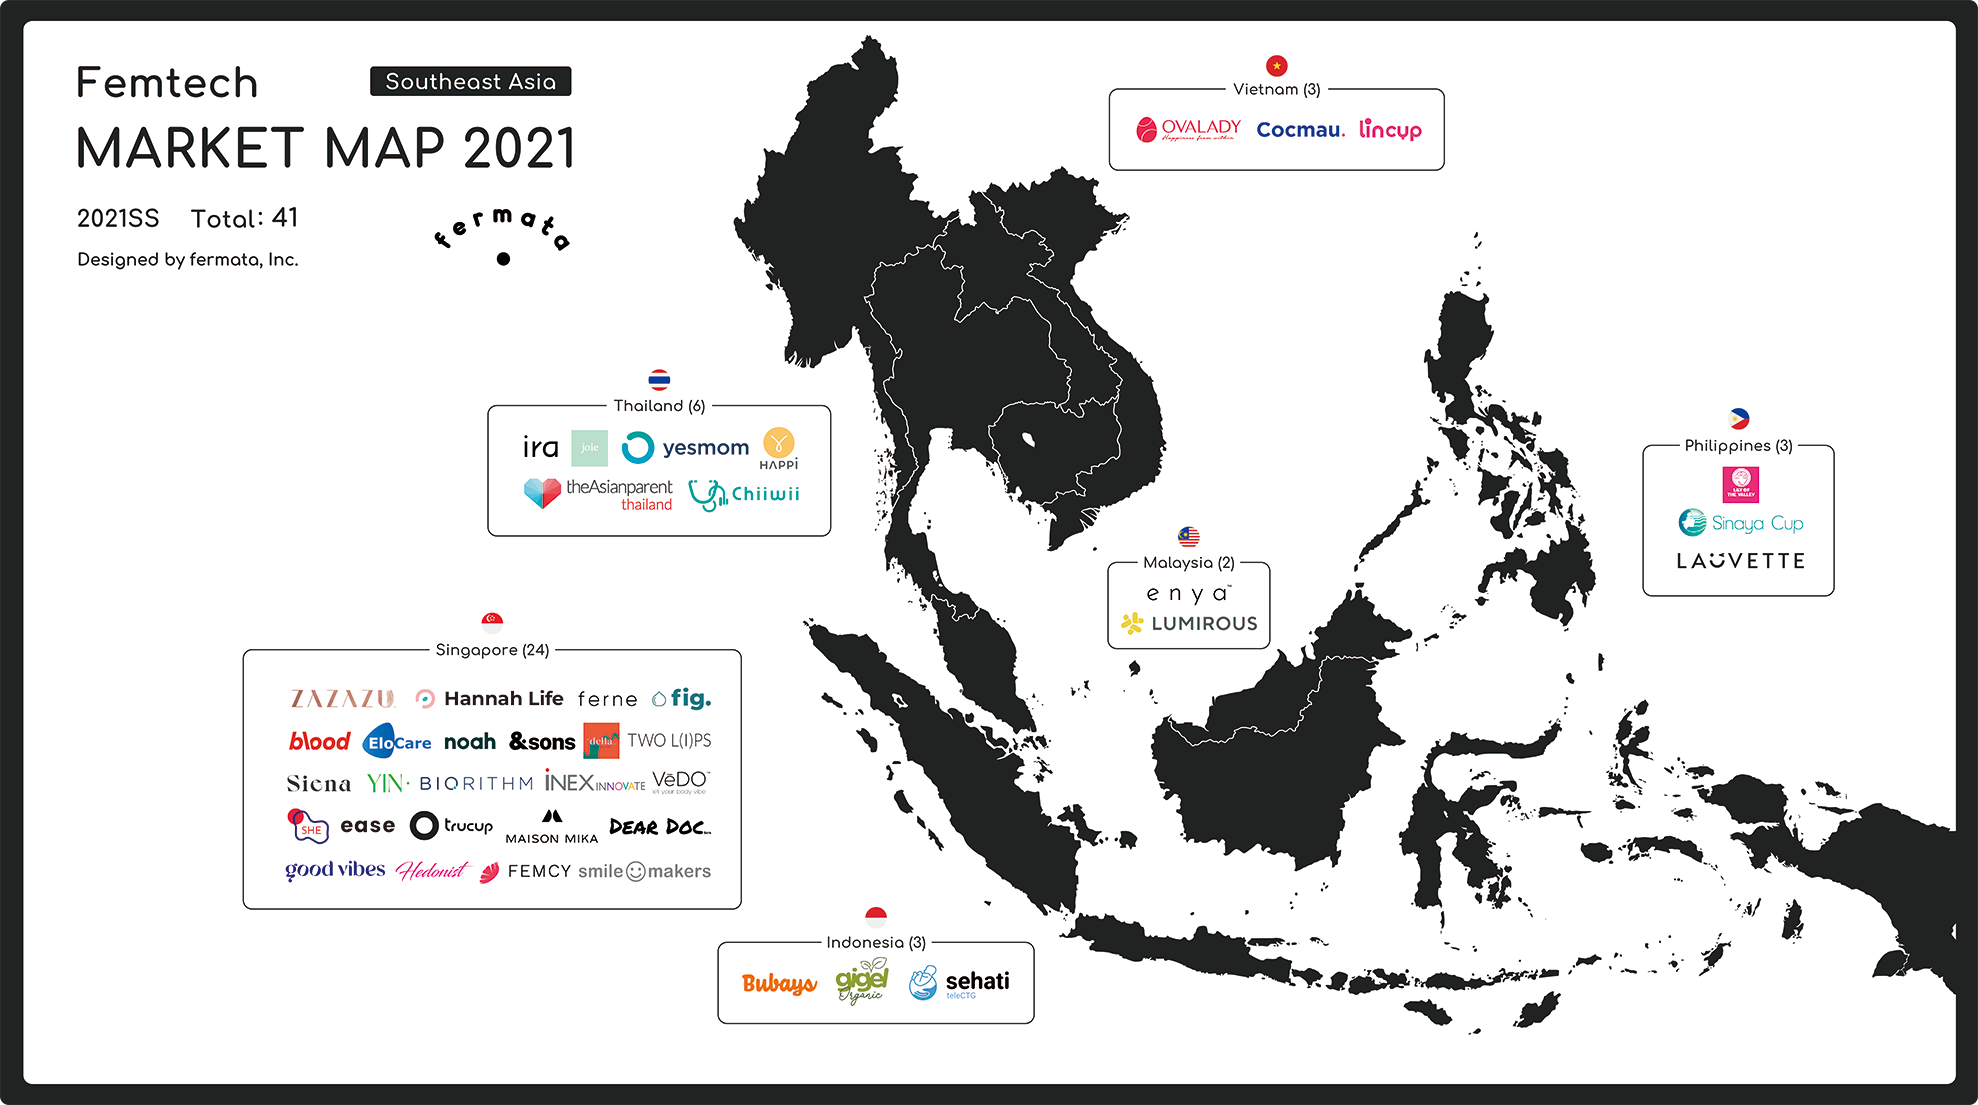 Southeast Asia femtech marketmap 2021